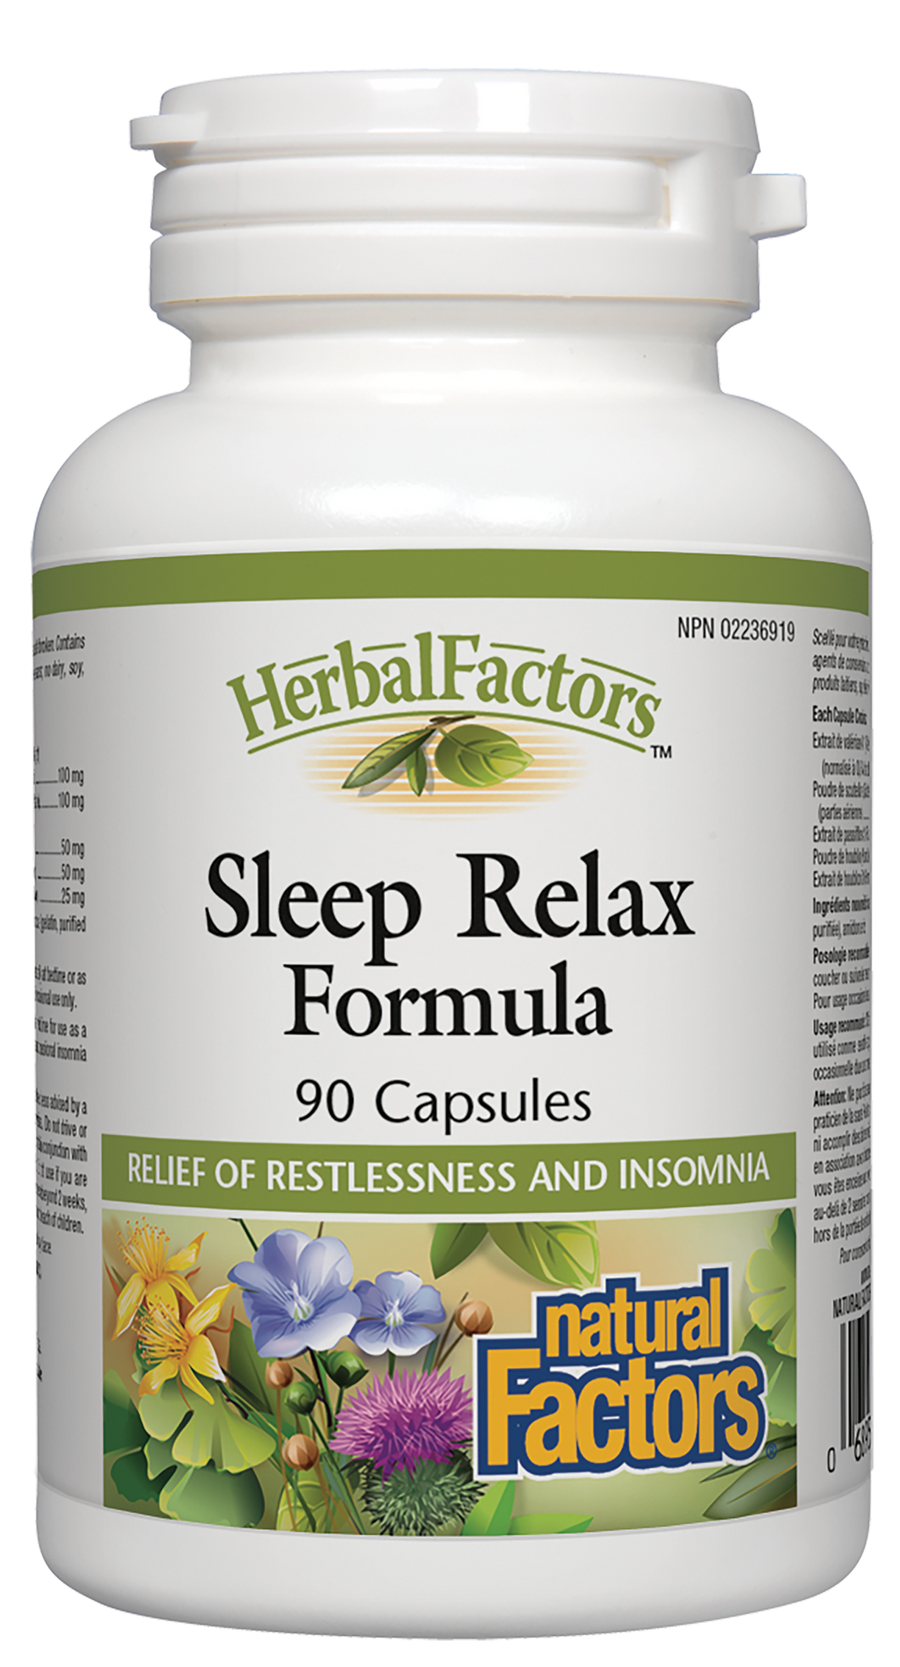 Natural Factors Sleep Relax Formula, HerbalFactors 90 Capsules